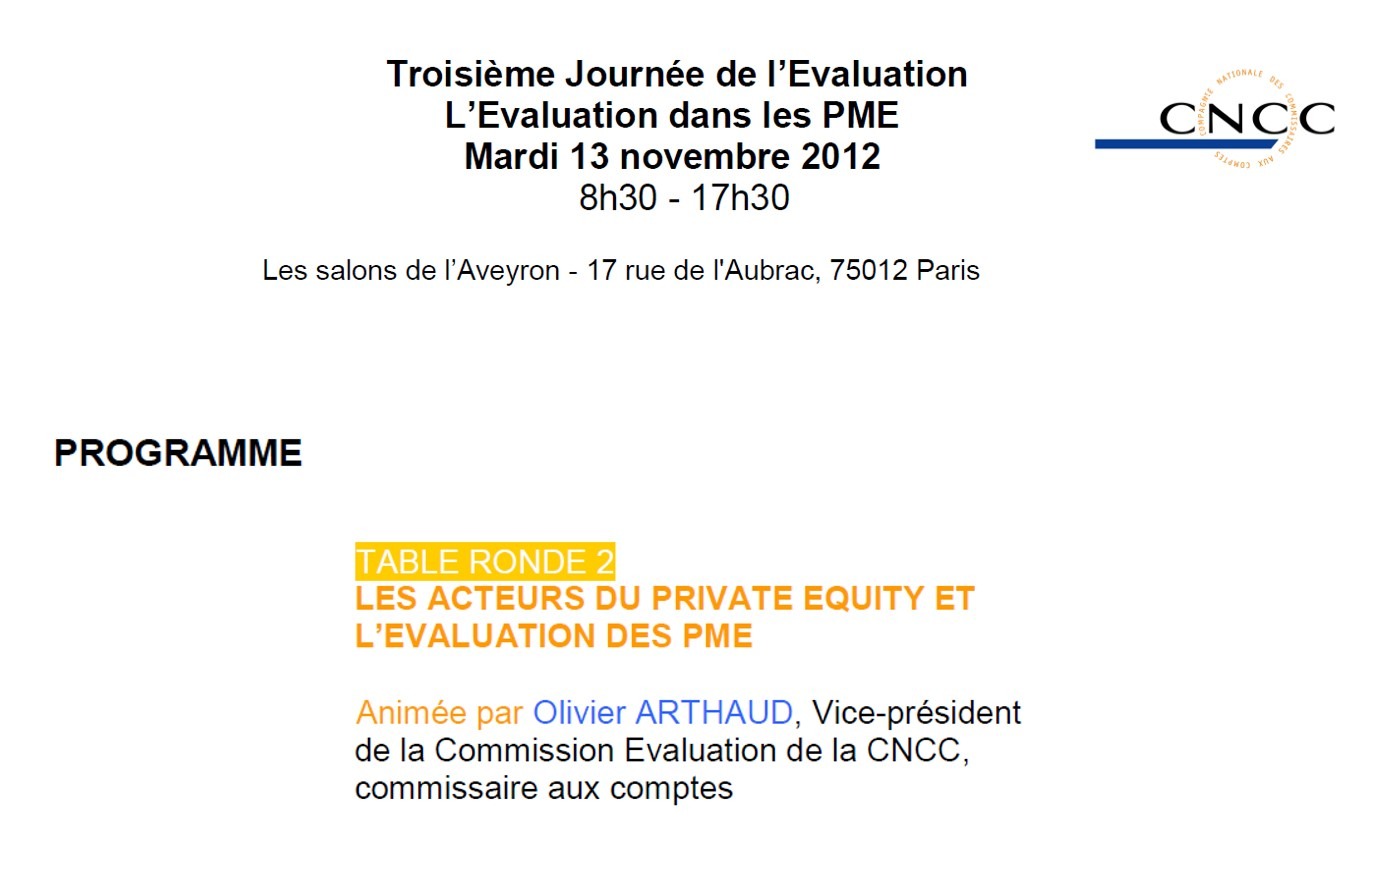 JOURNÉE DE L'ÉVALUATION 2012 - LES ACTEURS DU PRIVATE EQUITY ET L'ÉVALUATION DES PME